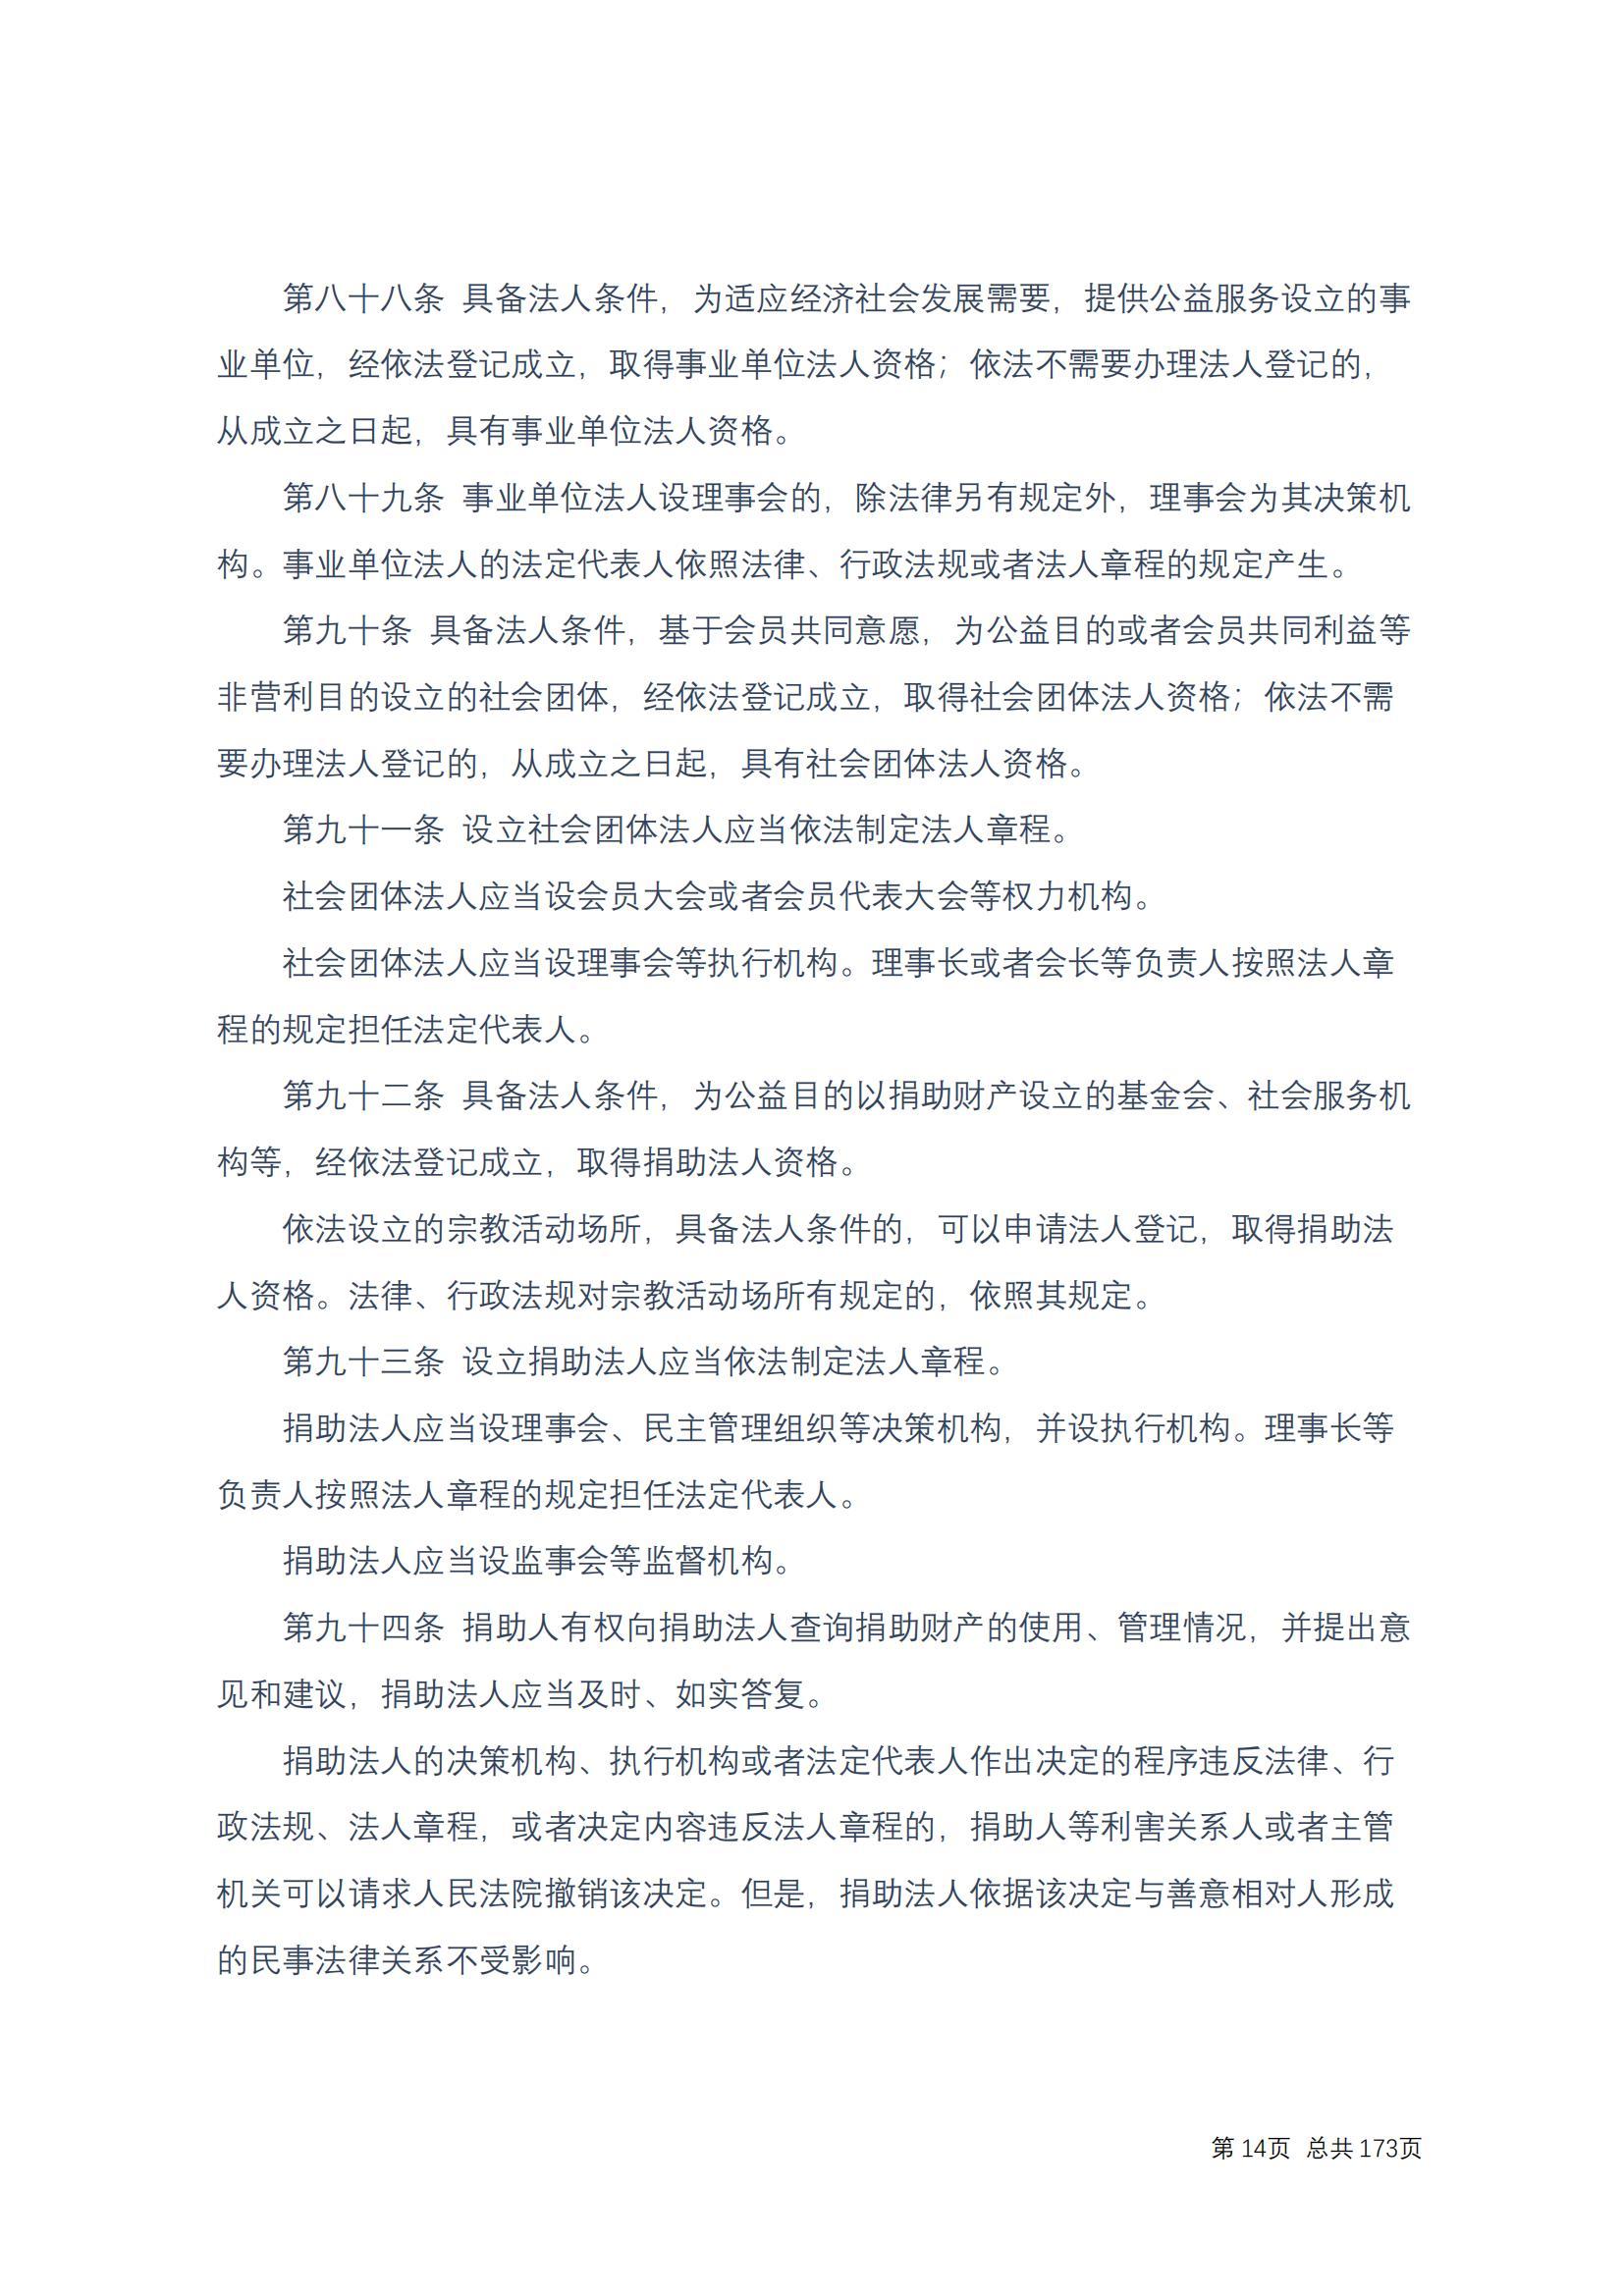 中华人民共和国民法典 修改过_13